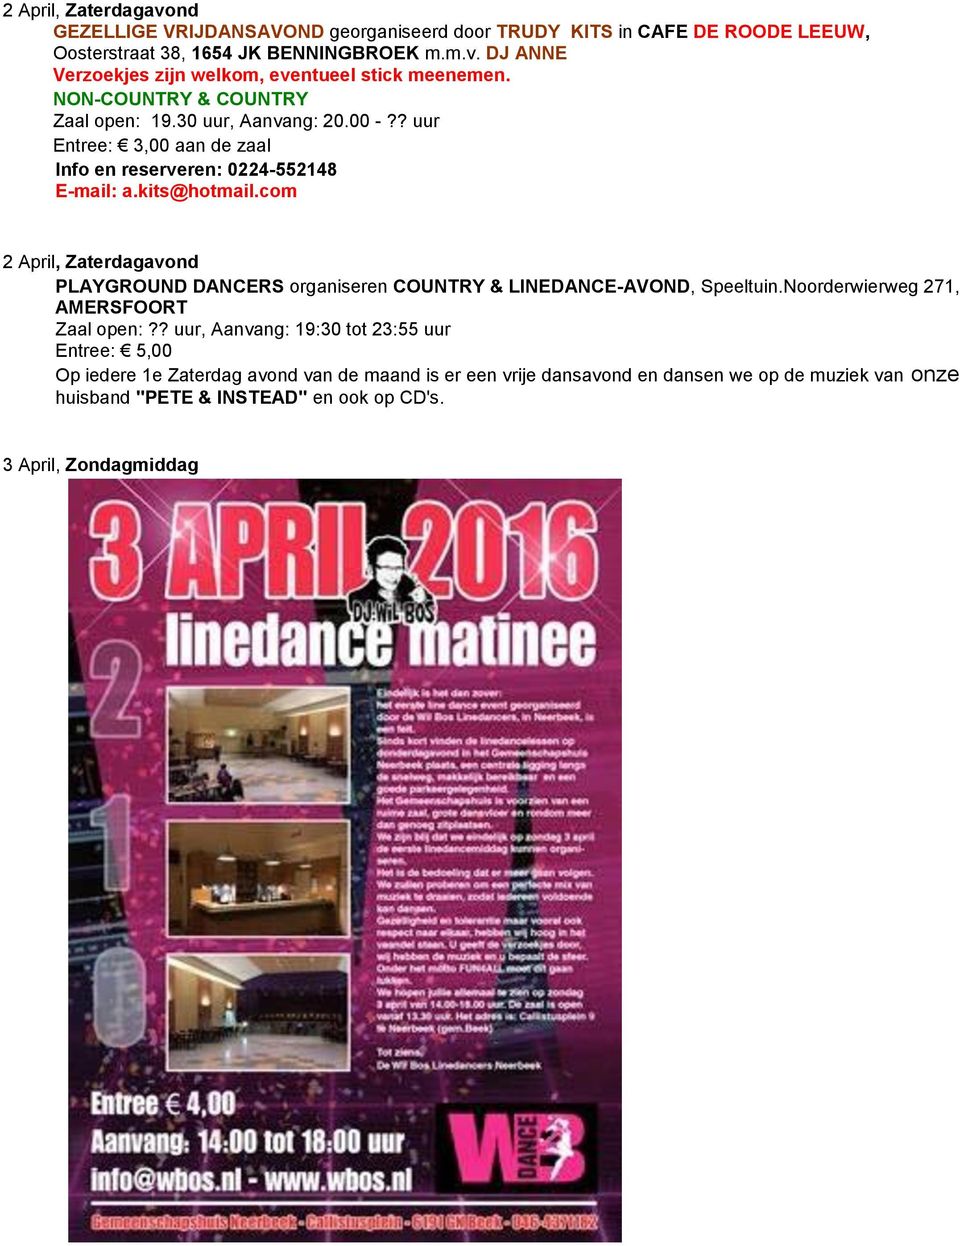 com 2 April, Zaterdagavond PLAYGROUND DANCERS organiseren COUNTRY & LINEDANCE-AVOND, Speeltuin.Noorderwierweg 271, AMERSFOORT Zaal open:?